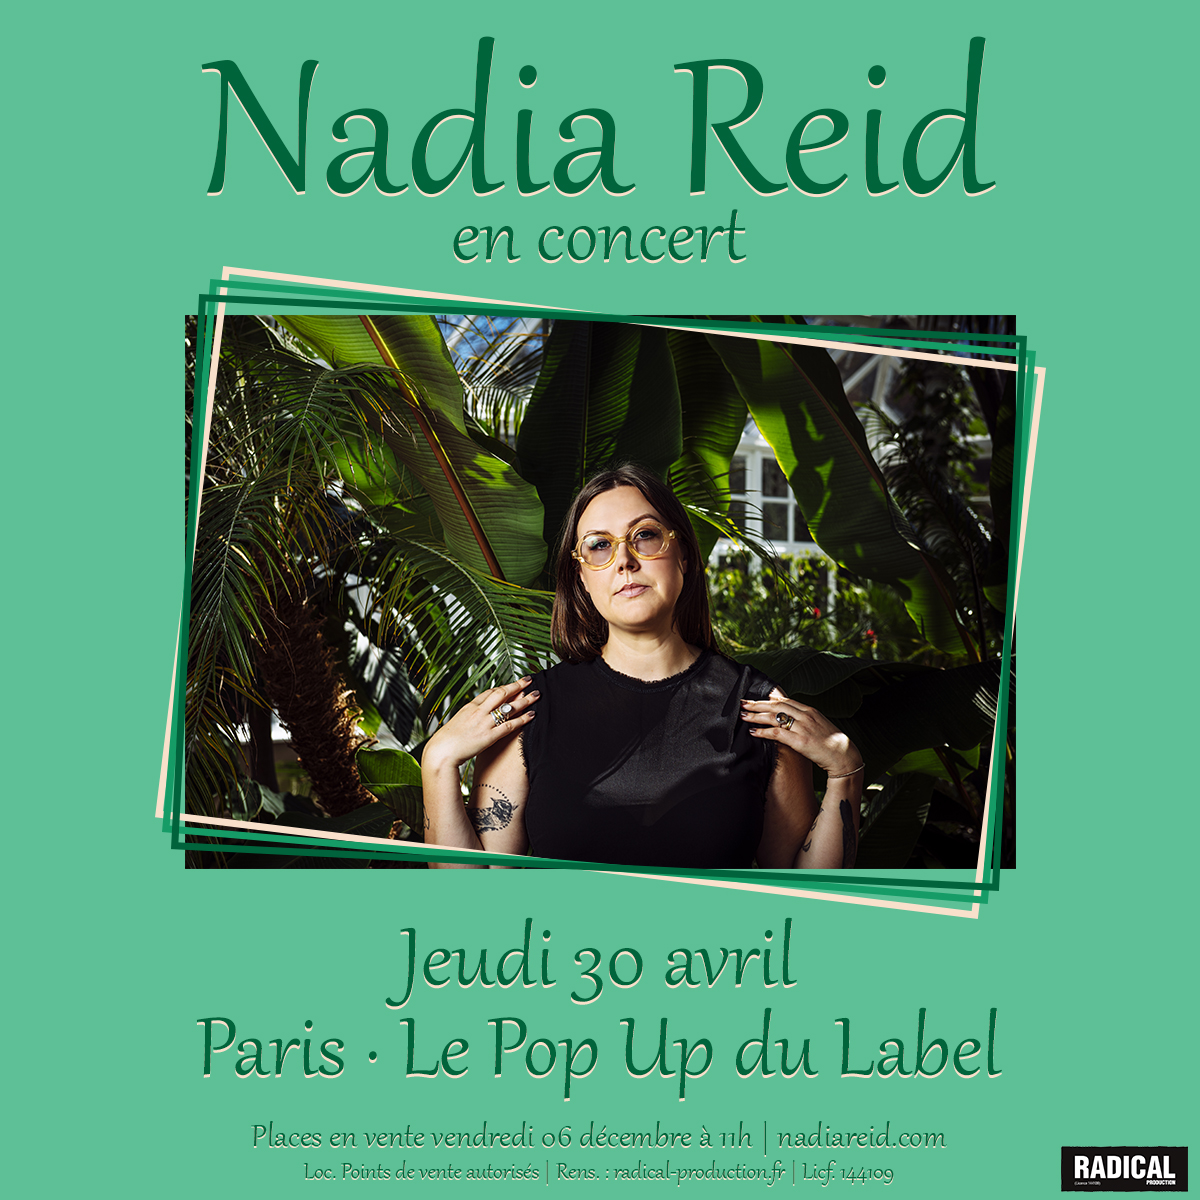 Nouvelle artiste Radical : NADIA REID (Nouvelle Zélande, folk). Elle sortira un nouvel album en mars 2020 sur le label @Spacebomb. Elle sera en concert le 30 avril 2020 à @LePopUpduLabel à Paris. Places en vente le 06 décembre à 11h00. @HelloNadiaReid